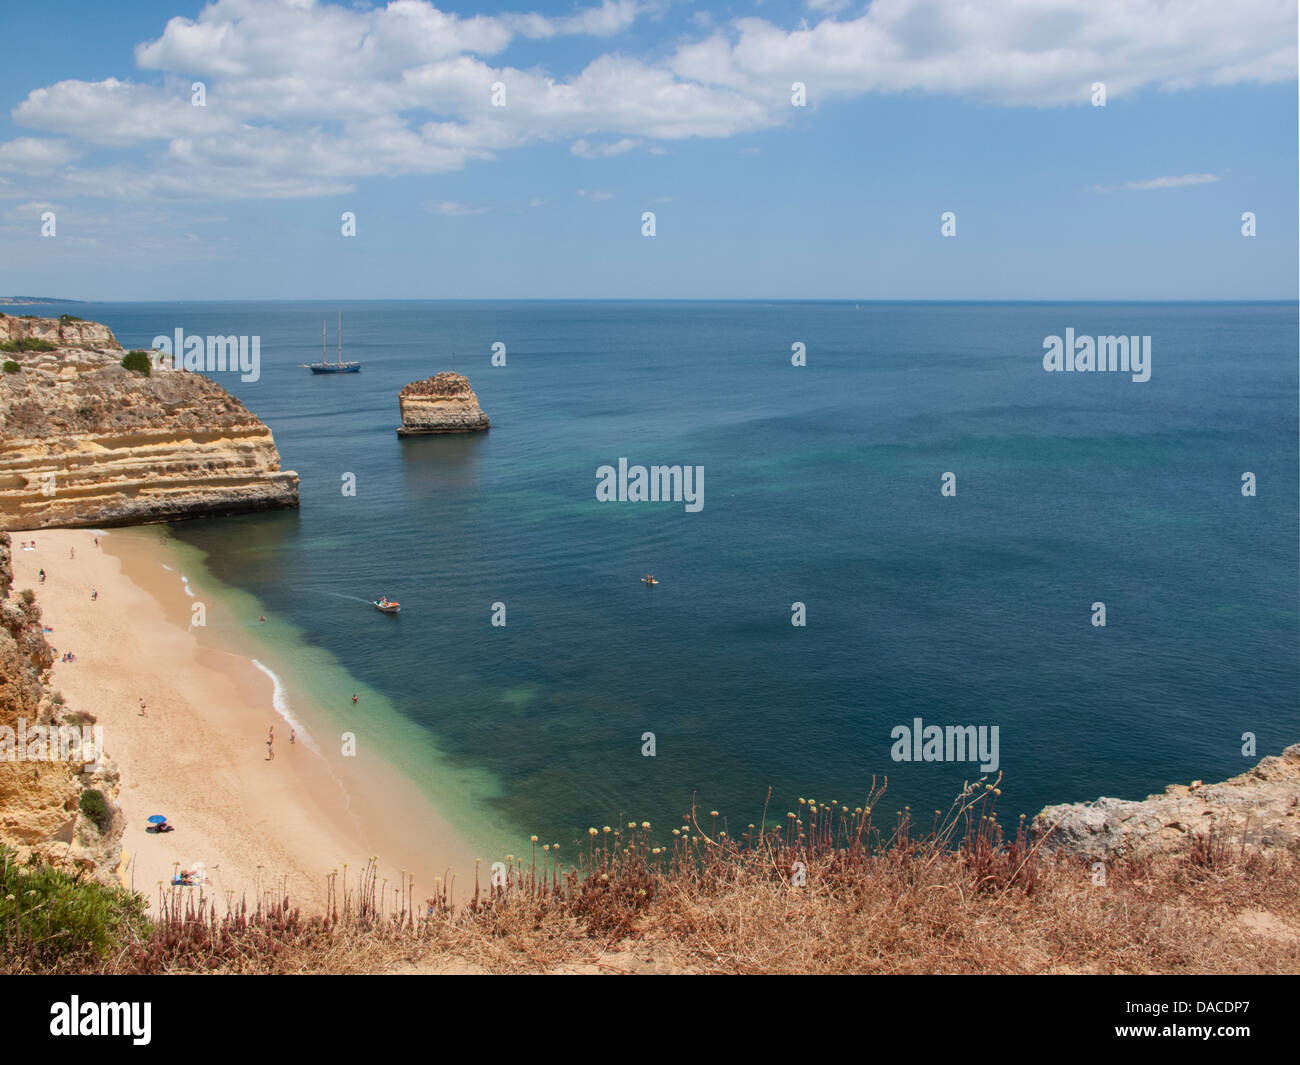 Sandy beach in the Algarve, Portugal Stock Photo